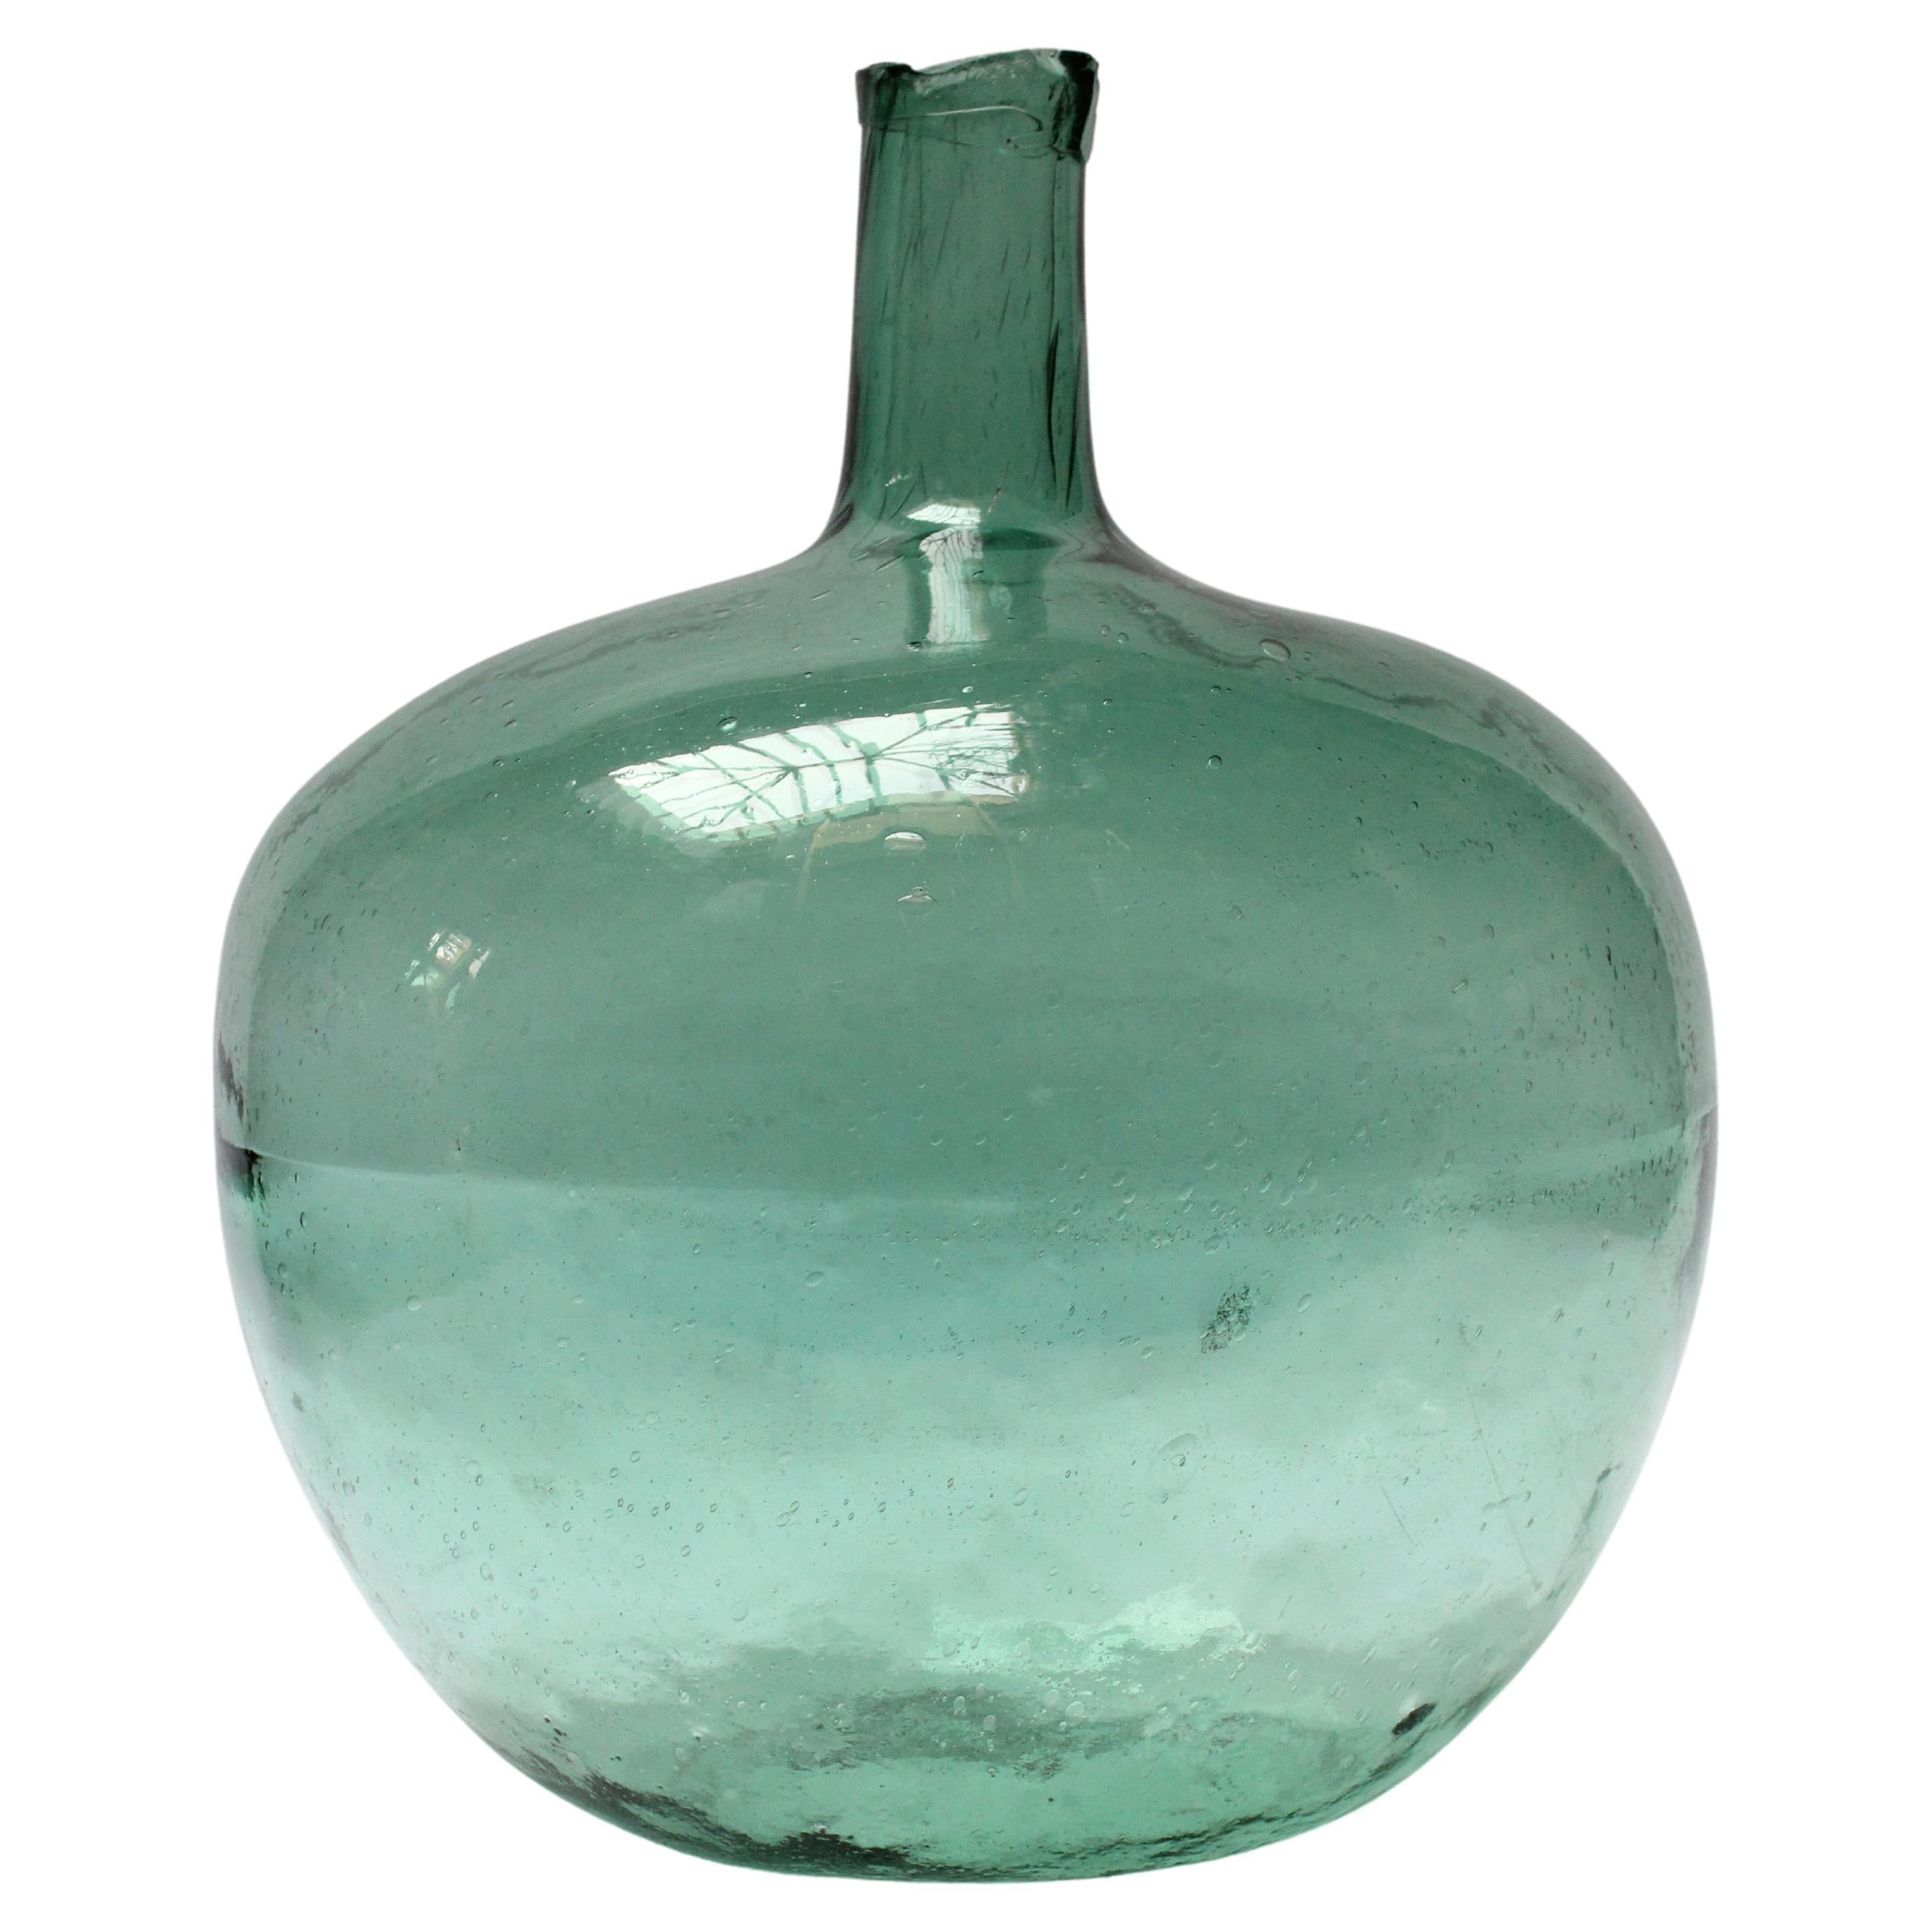 Large Antique French Glass Demijohn Bottles - Cylinder Shape